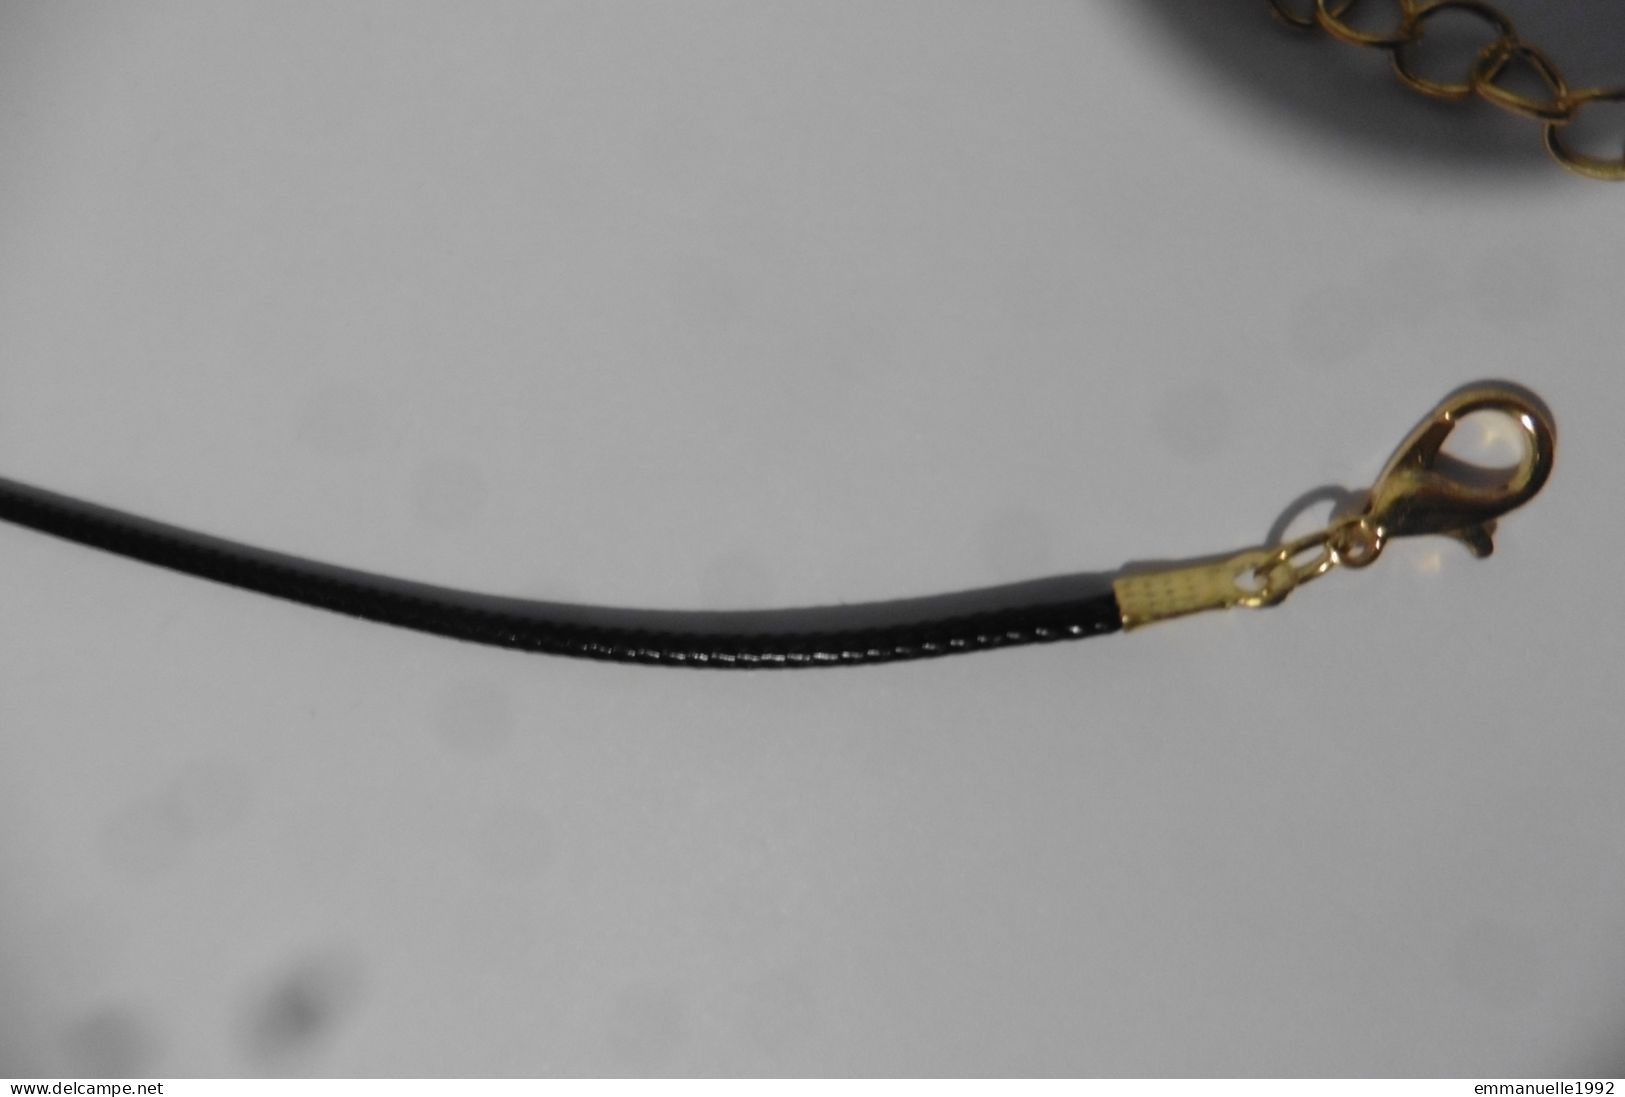 Neuf - Collier Cordon Noir Simili Cuir Tressé Pour Pendentif - Longueur Réglable Par Chaînette En Métal Doré - Necklaces/Chains